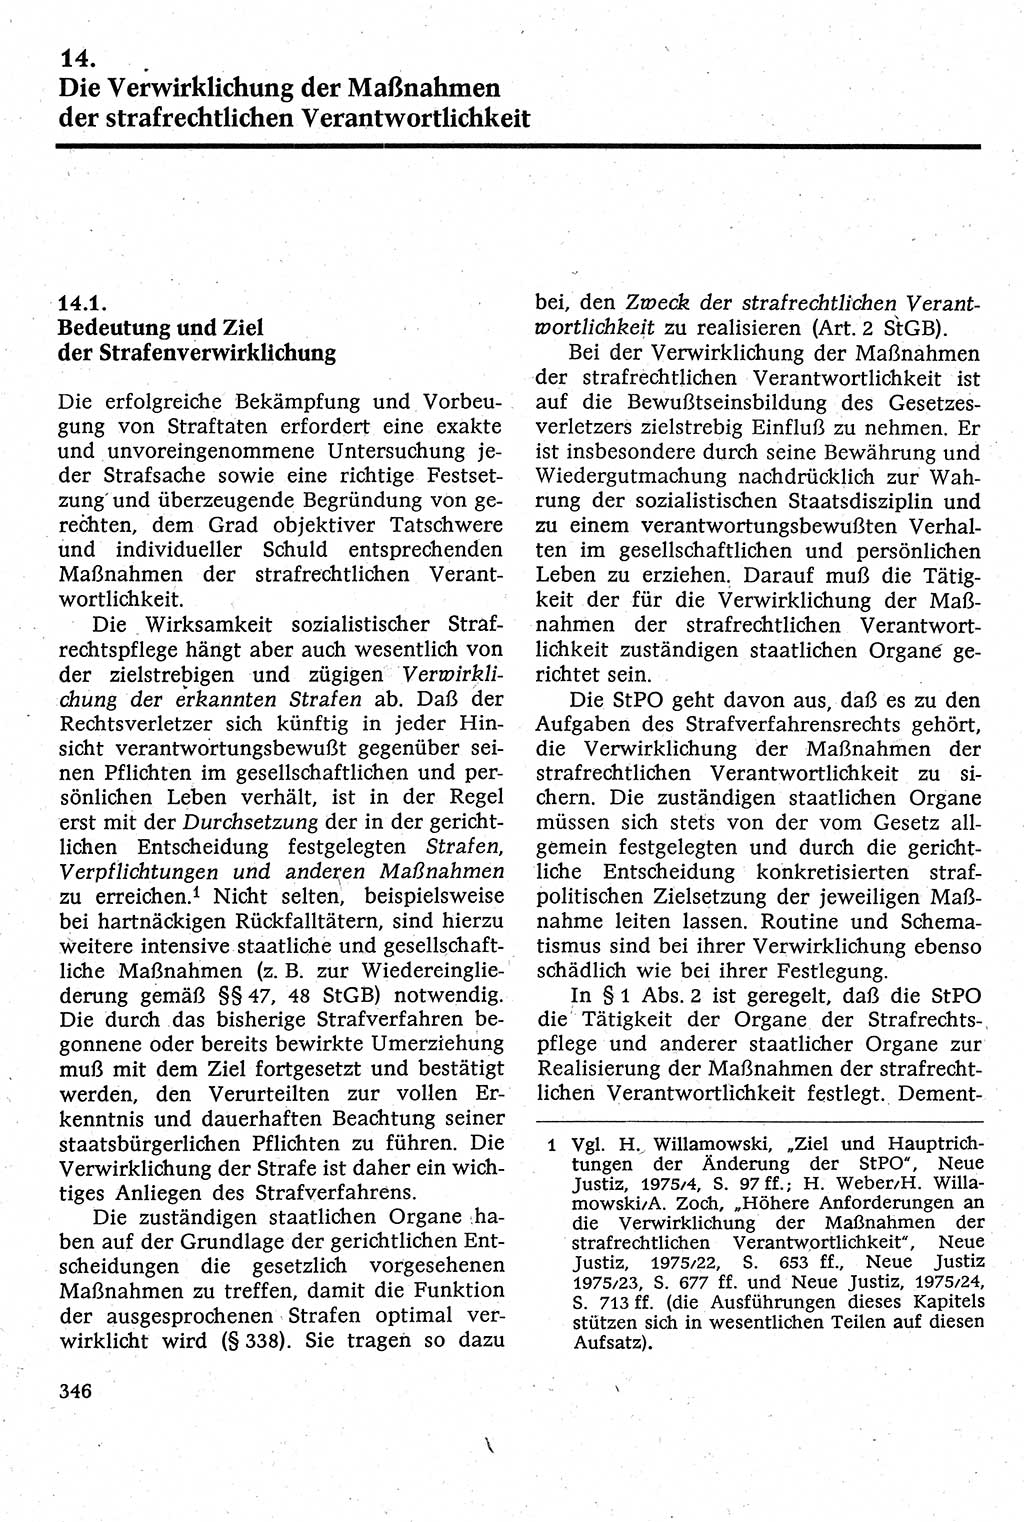 Strafverfahrensrecht [Deutsche Demokratische Republik (DDR)], Lehrbuch 1982, Seite 346 (Strafverf.-R. DDR Lb. 1982, S. 346)